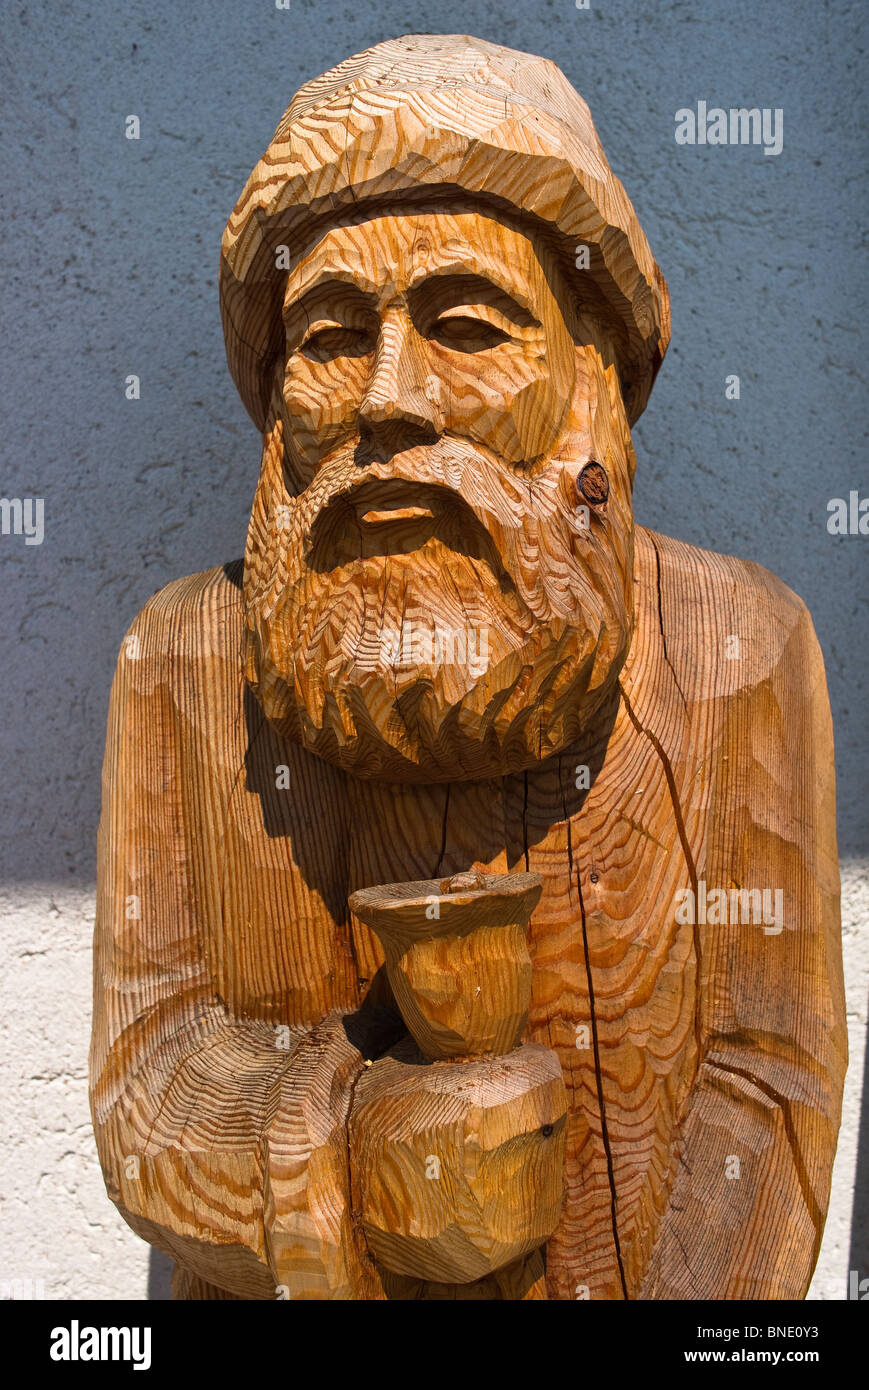 Tallado en madera de hombre barbado Foto de stock